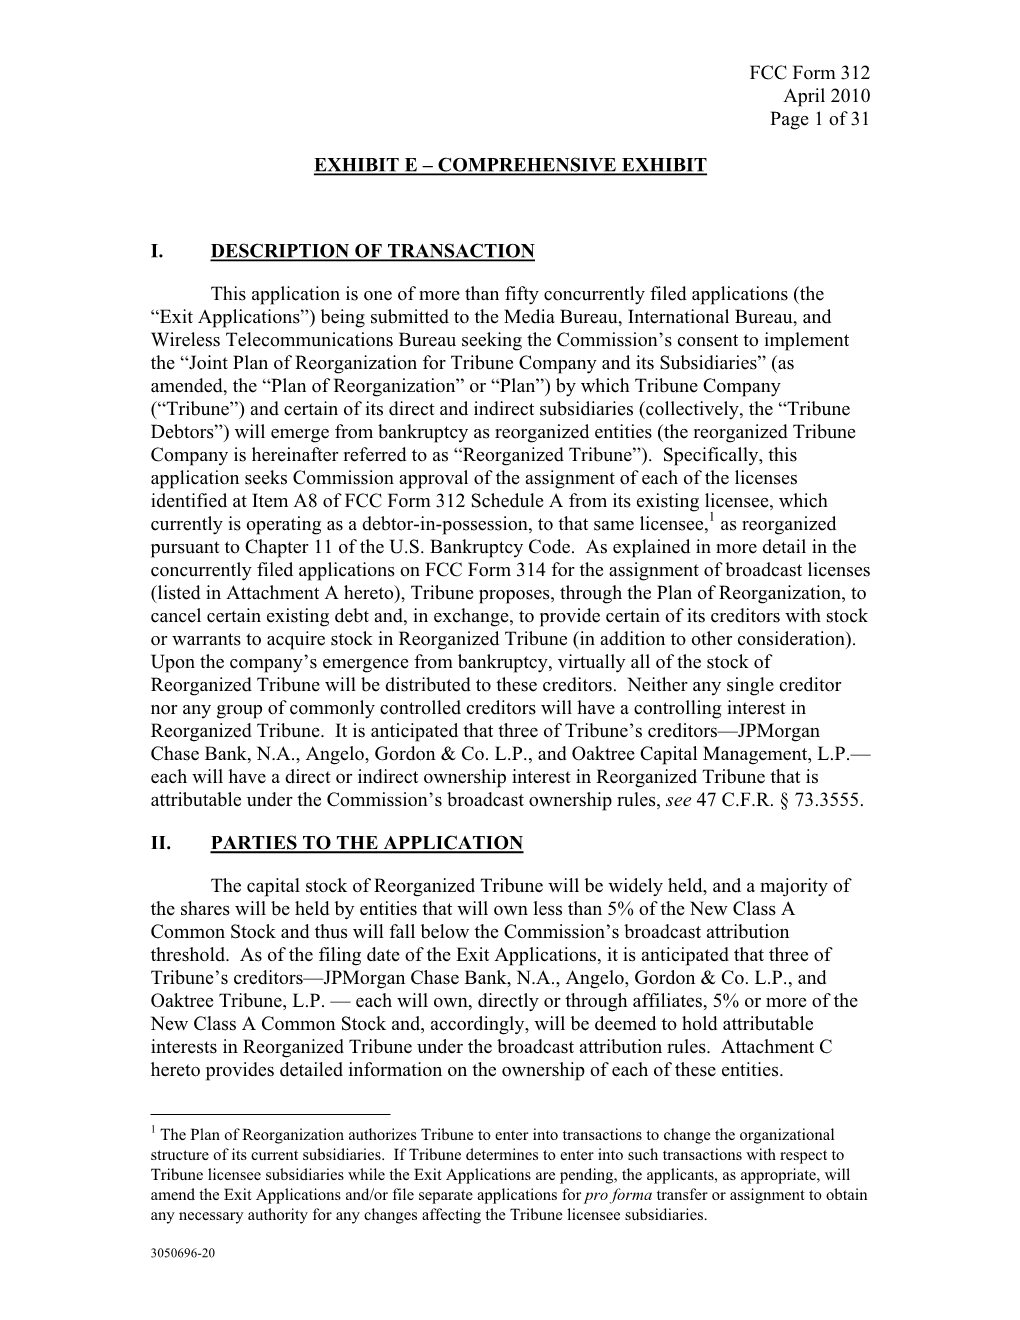 FCC Form 312 April 2010 Page 1 of 31 EXHIBIT E